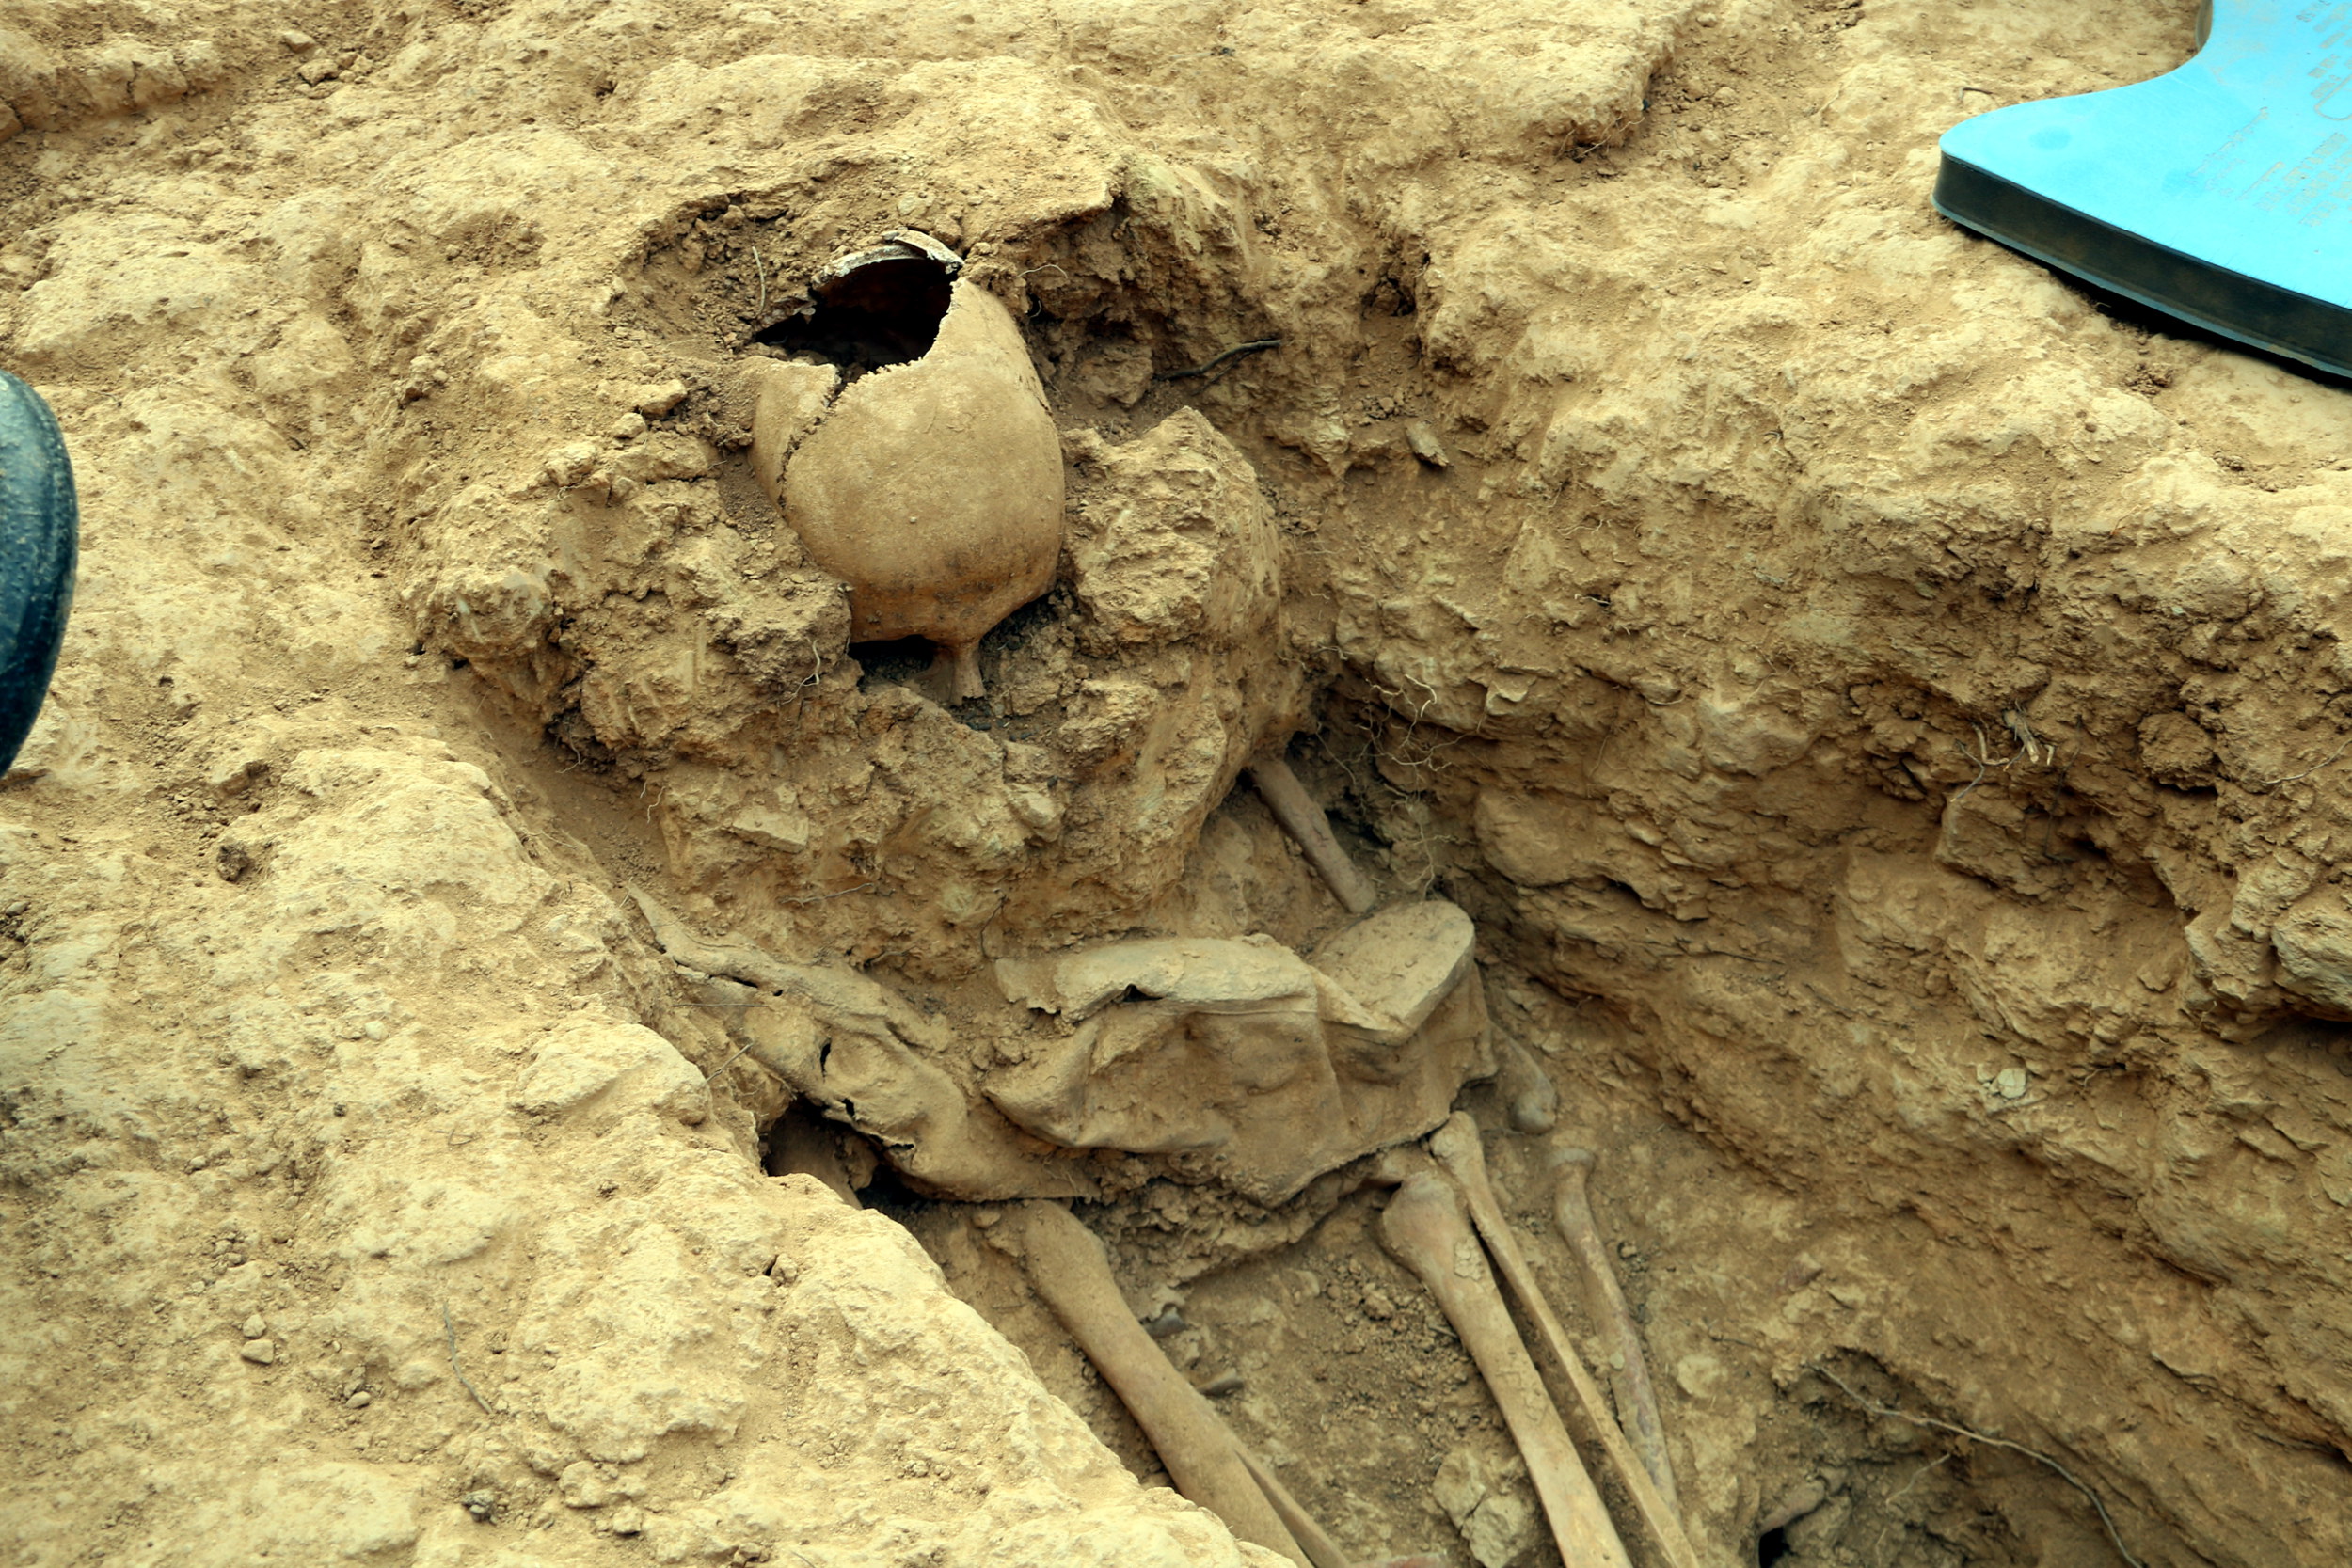 Skeleton found in mass grave in Vilanova del Meià (by Estela Busoms)